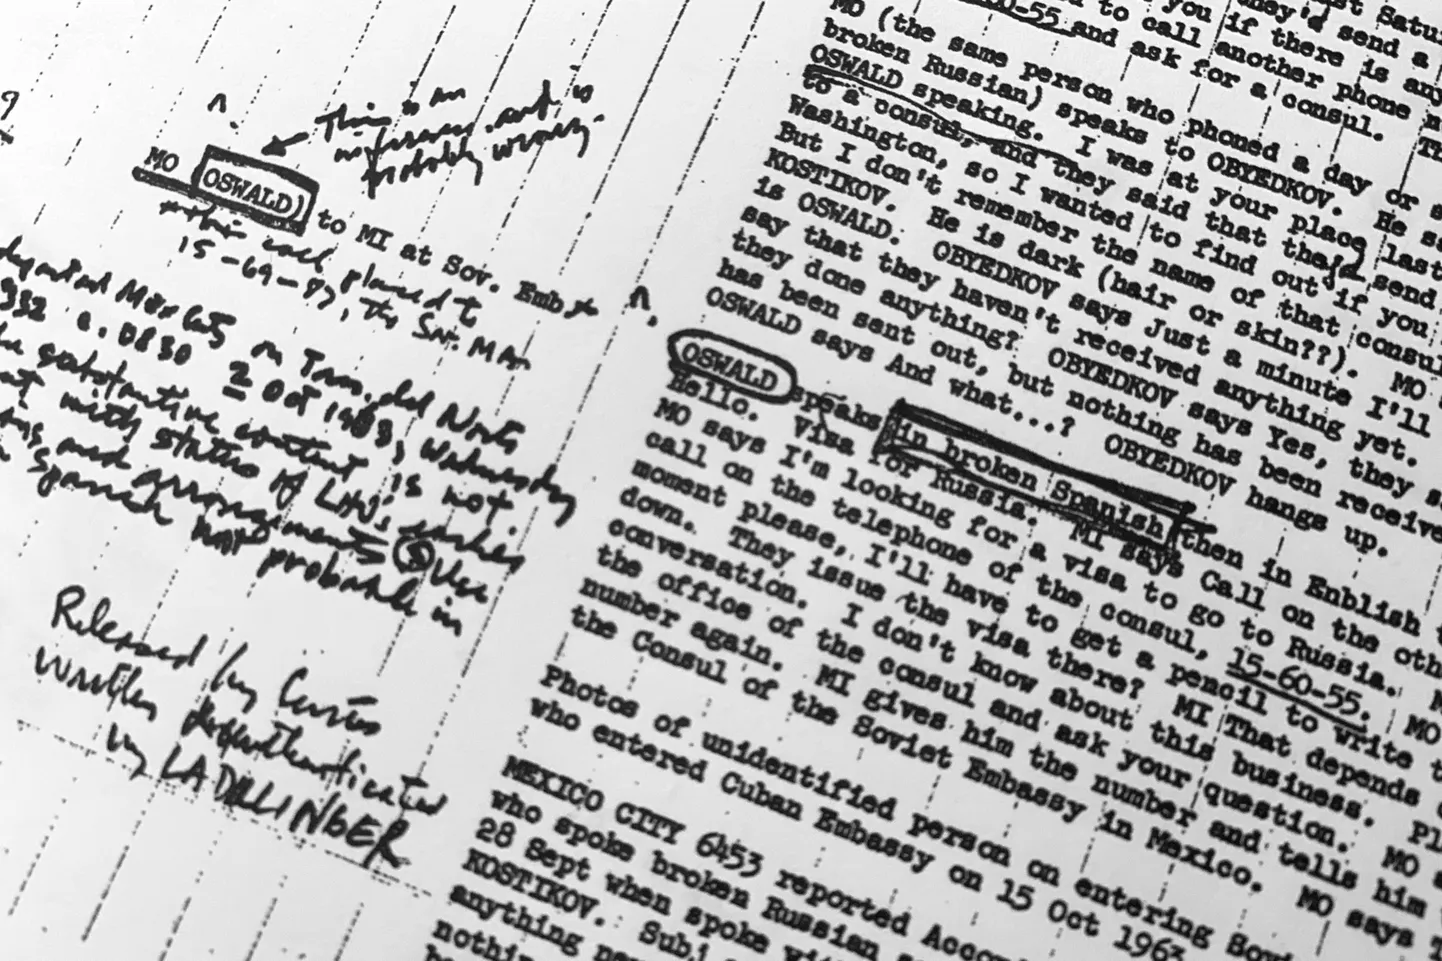 USA Luure Keskagentuuri (CIA) dokument 3. veebruarist 1968, milles kirjeldatakse Lee Harvey Oswaldi reisi Mehhikosse, kus ta võttis ühendust Nõukogude Liidu saatkonnaga